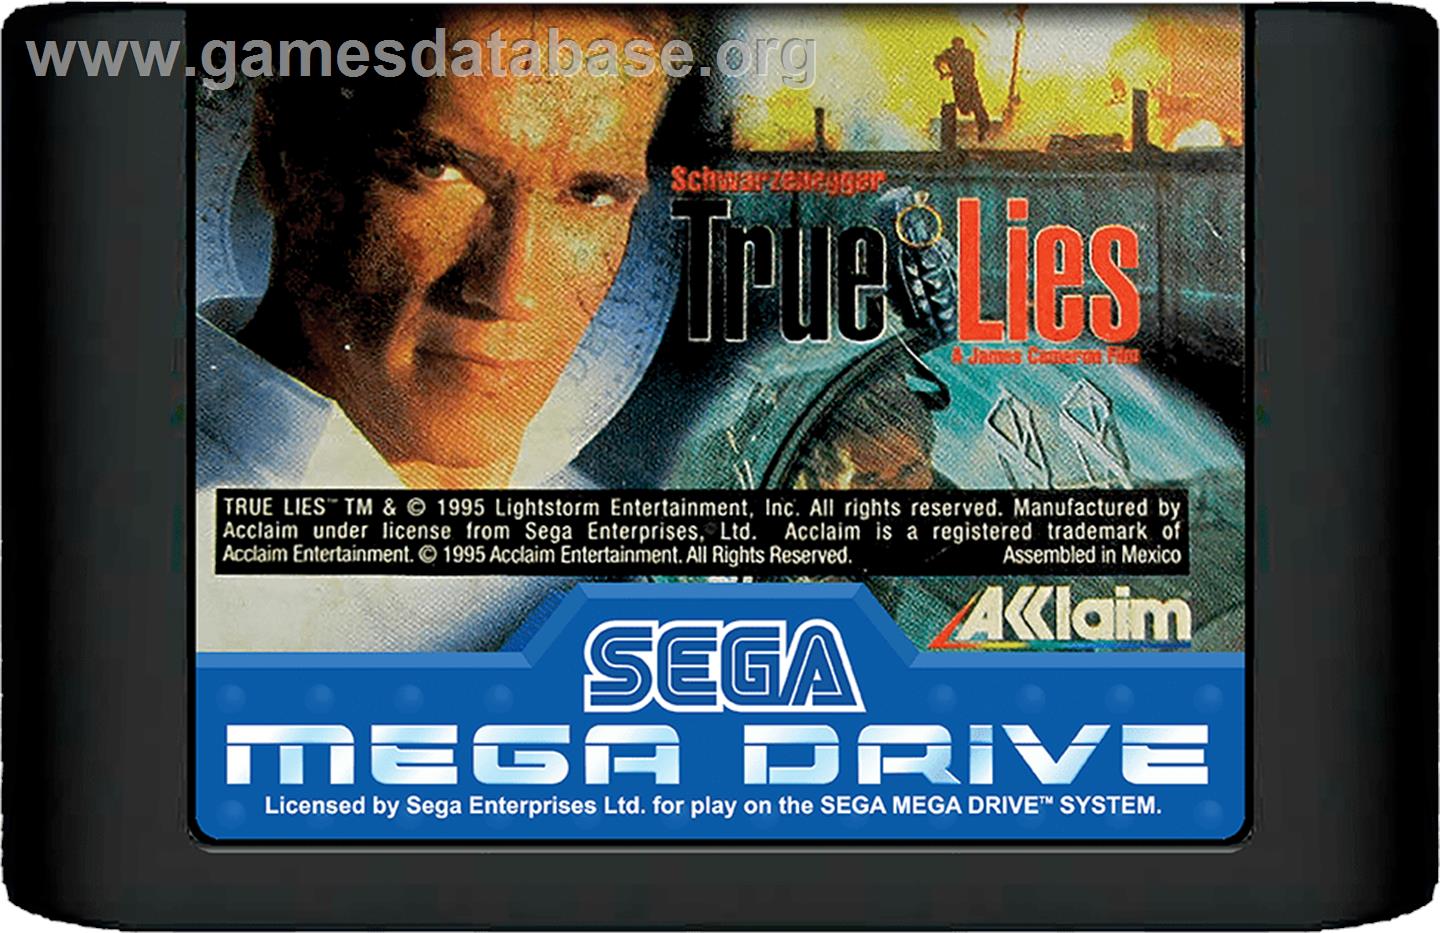 True Lies - Sega Genesis - Artwork - Cartridge